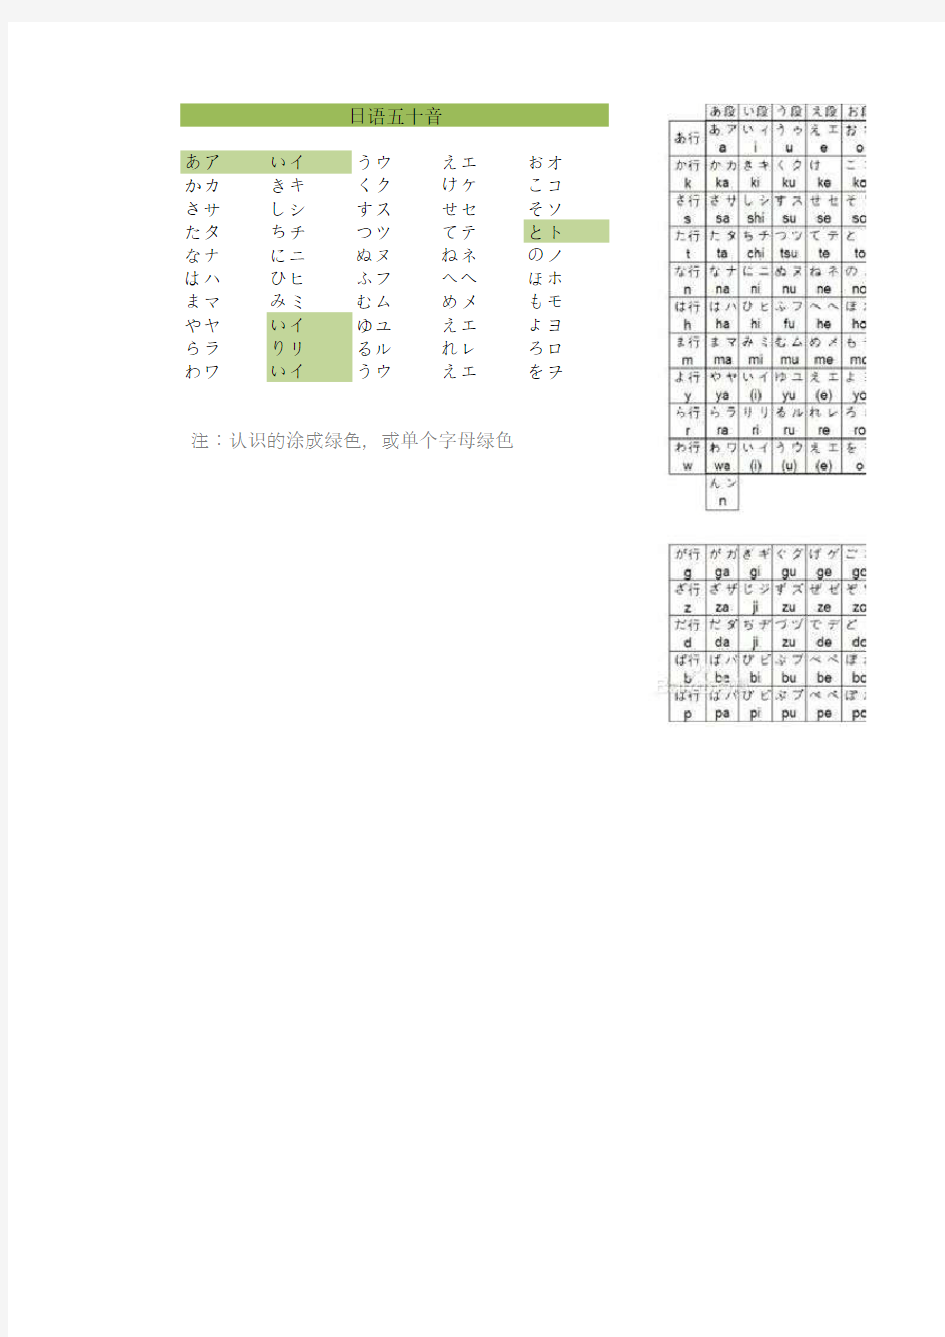 日语五十音图打印版_Excel表格